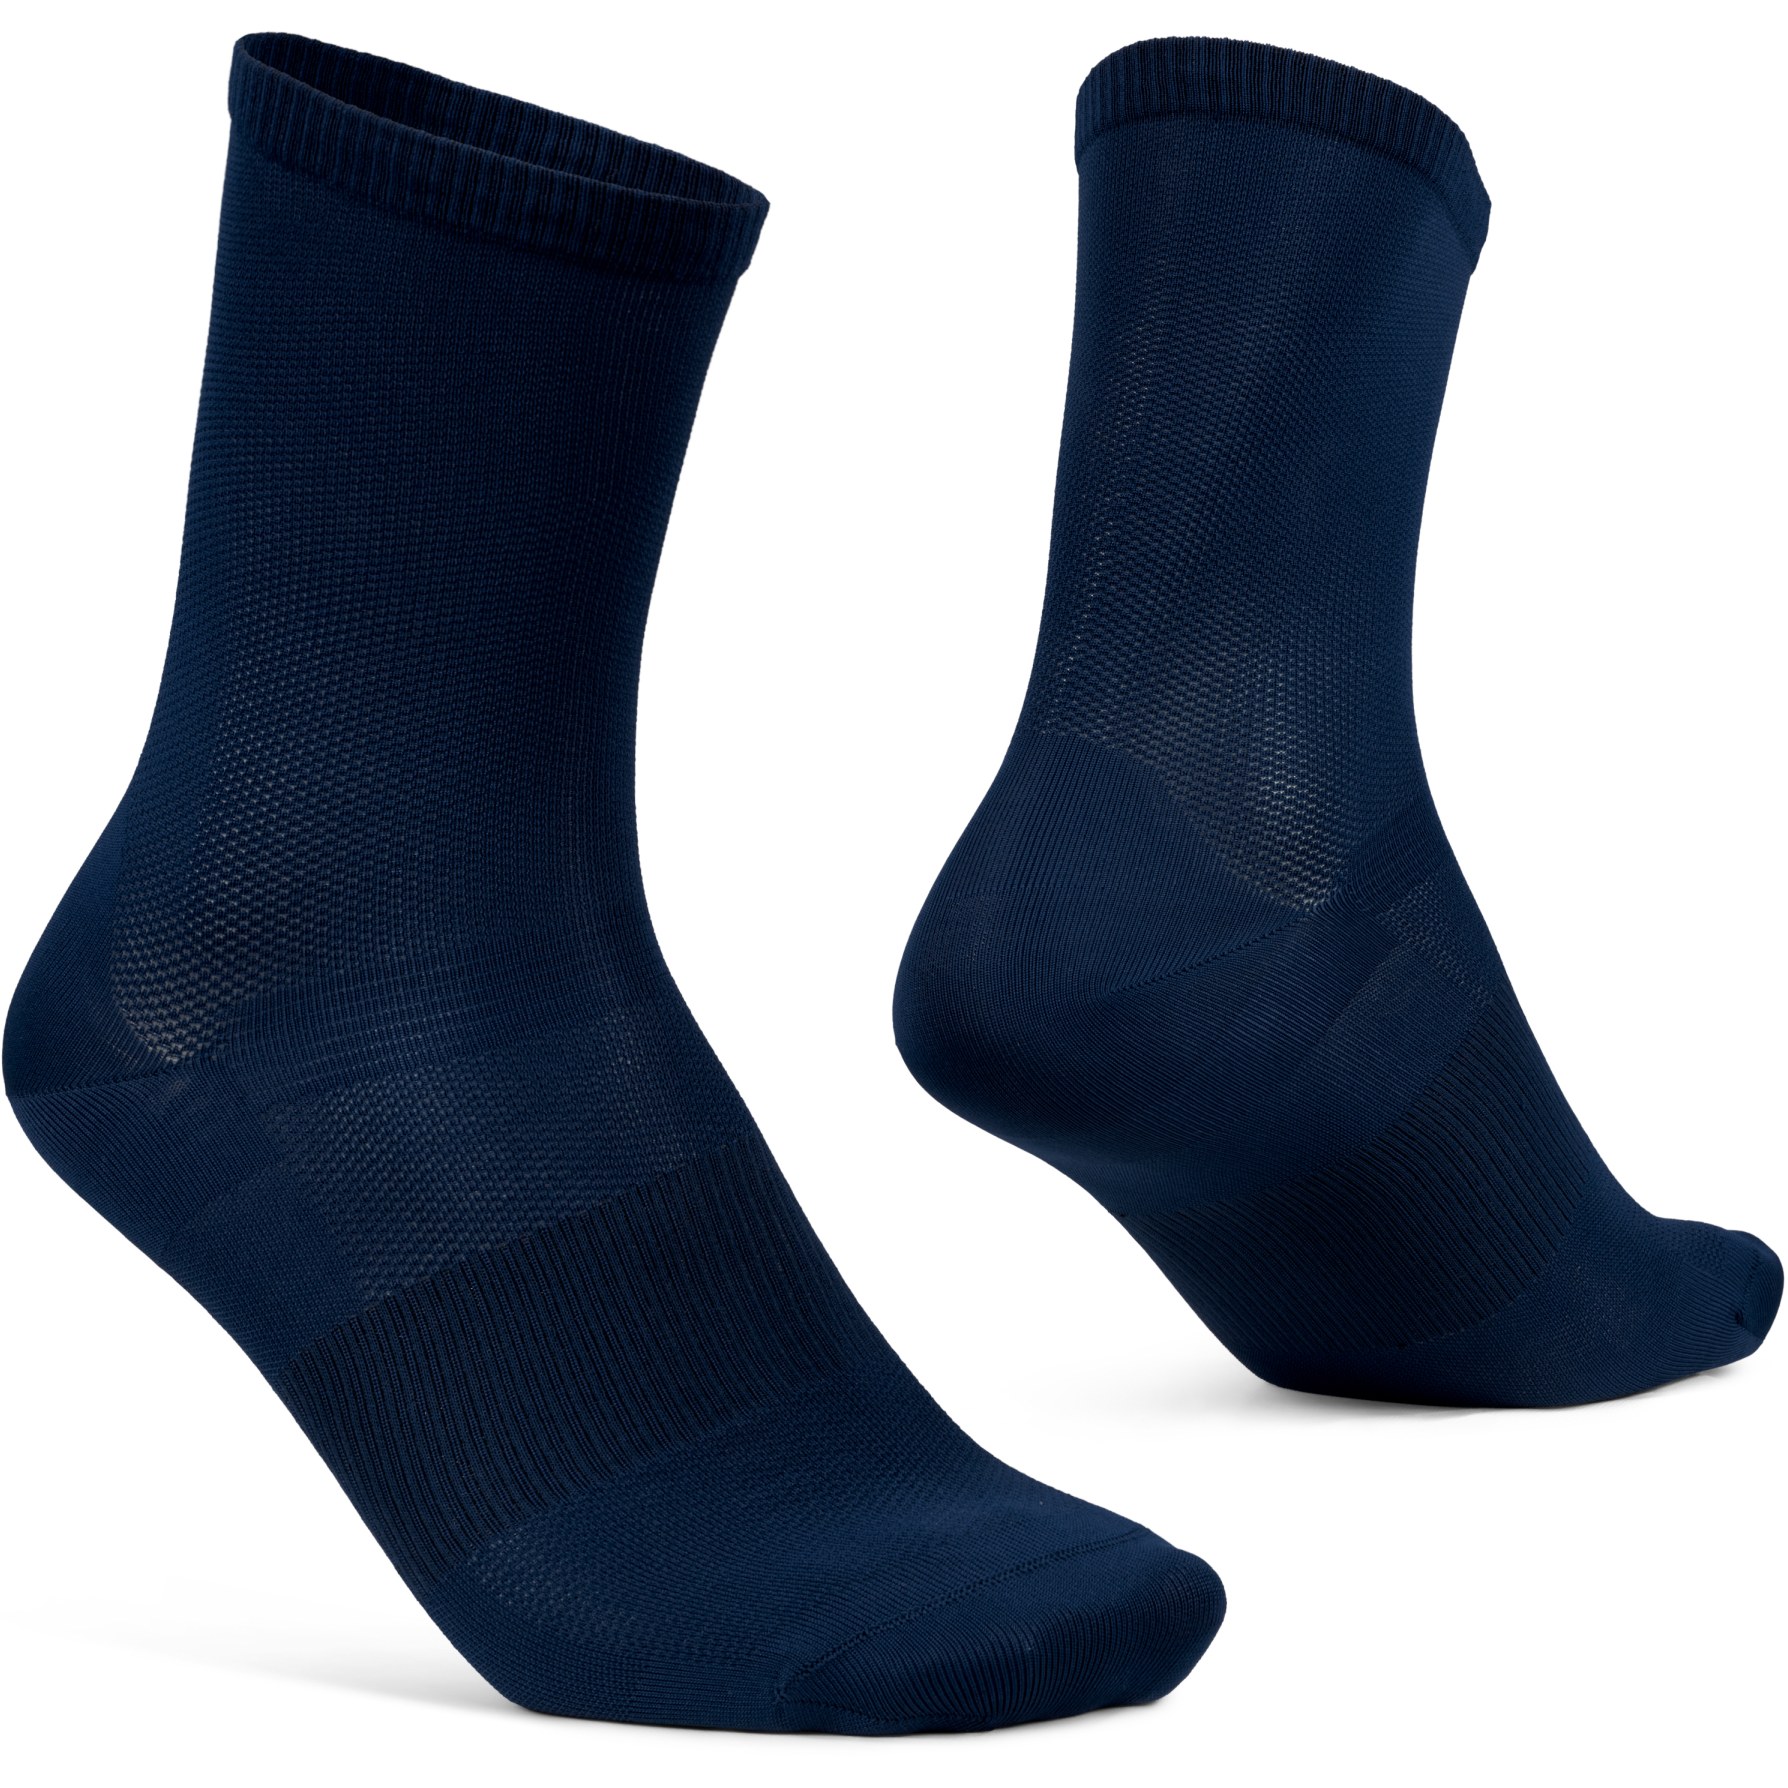 Produktbild von GripGrab Lightweight Airflow Socken - Navy Blue